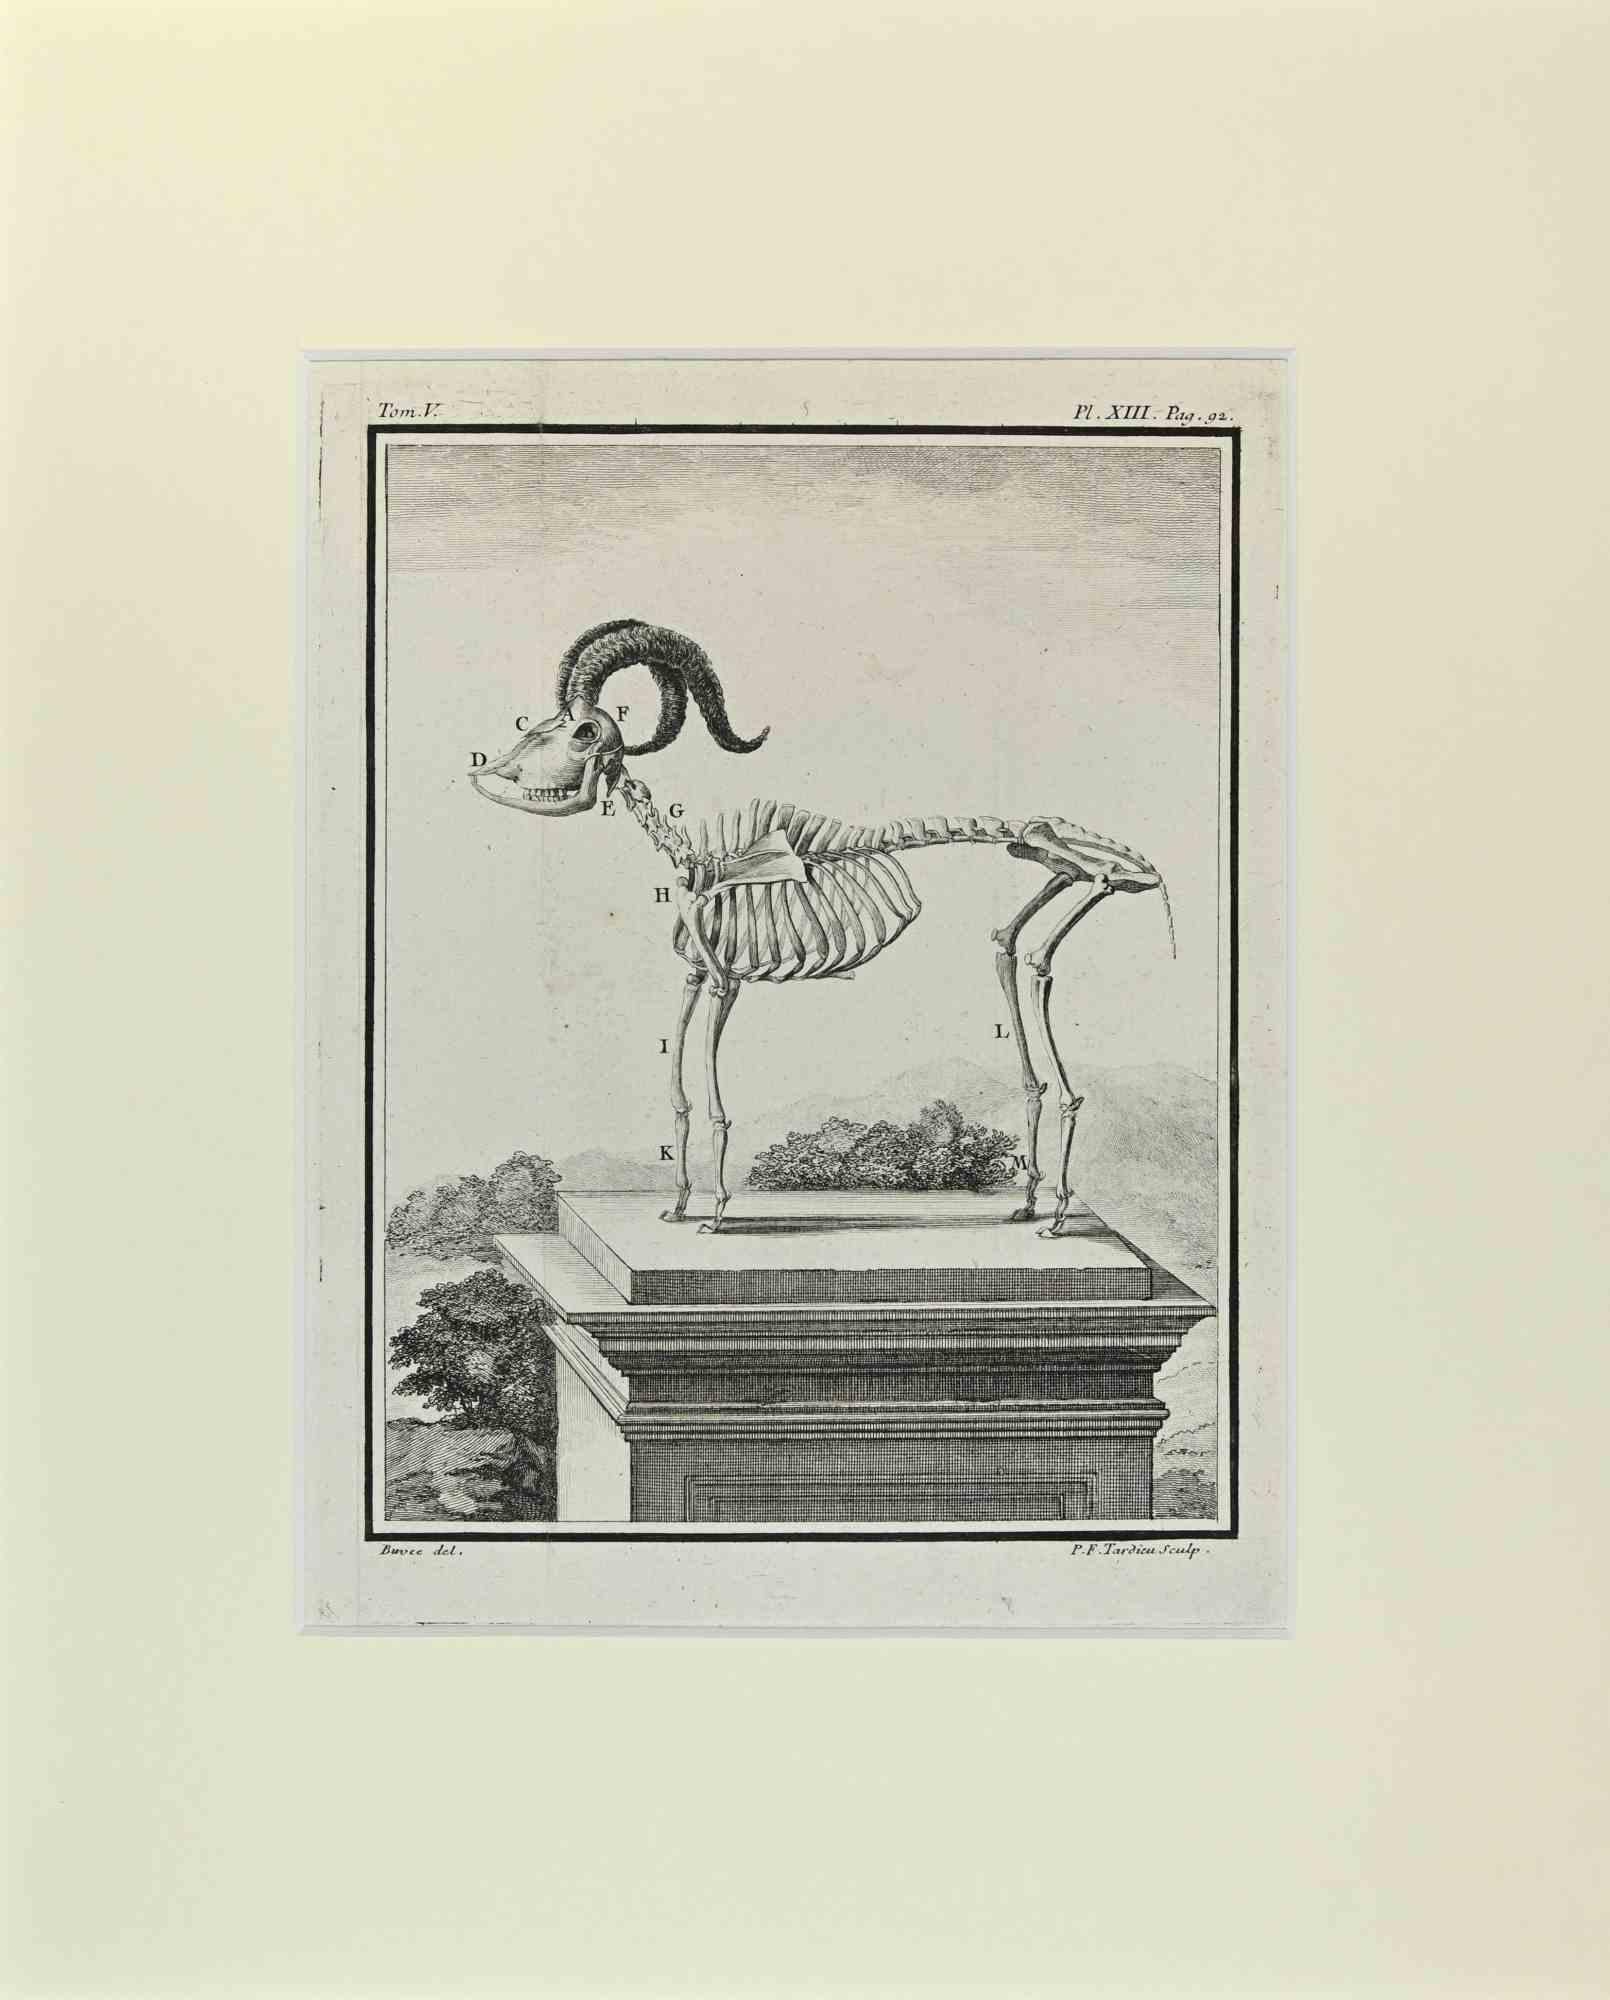 Mufflon Wildes Schaf ist ein Kunstwerk von Buvée l'Américain aus dem Jahr 1771.  

Radierung B./W. Druck auf Elfenbeinpapier. Signiert auf der Platte am unteren linken Rand.

Das Werk ist auf Karton geklebt. Abmessungen insgesamt: 35x28 cm.

Das